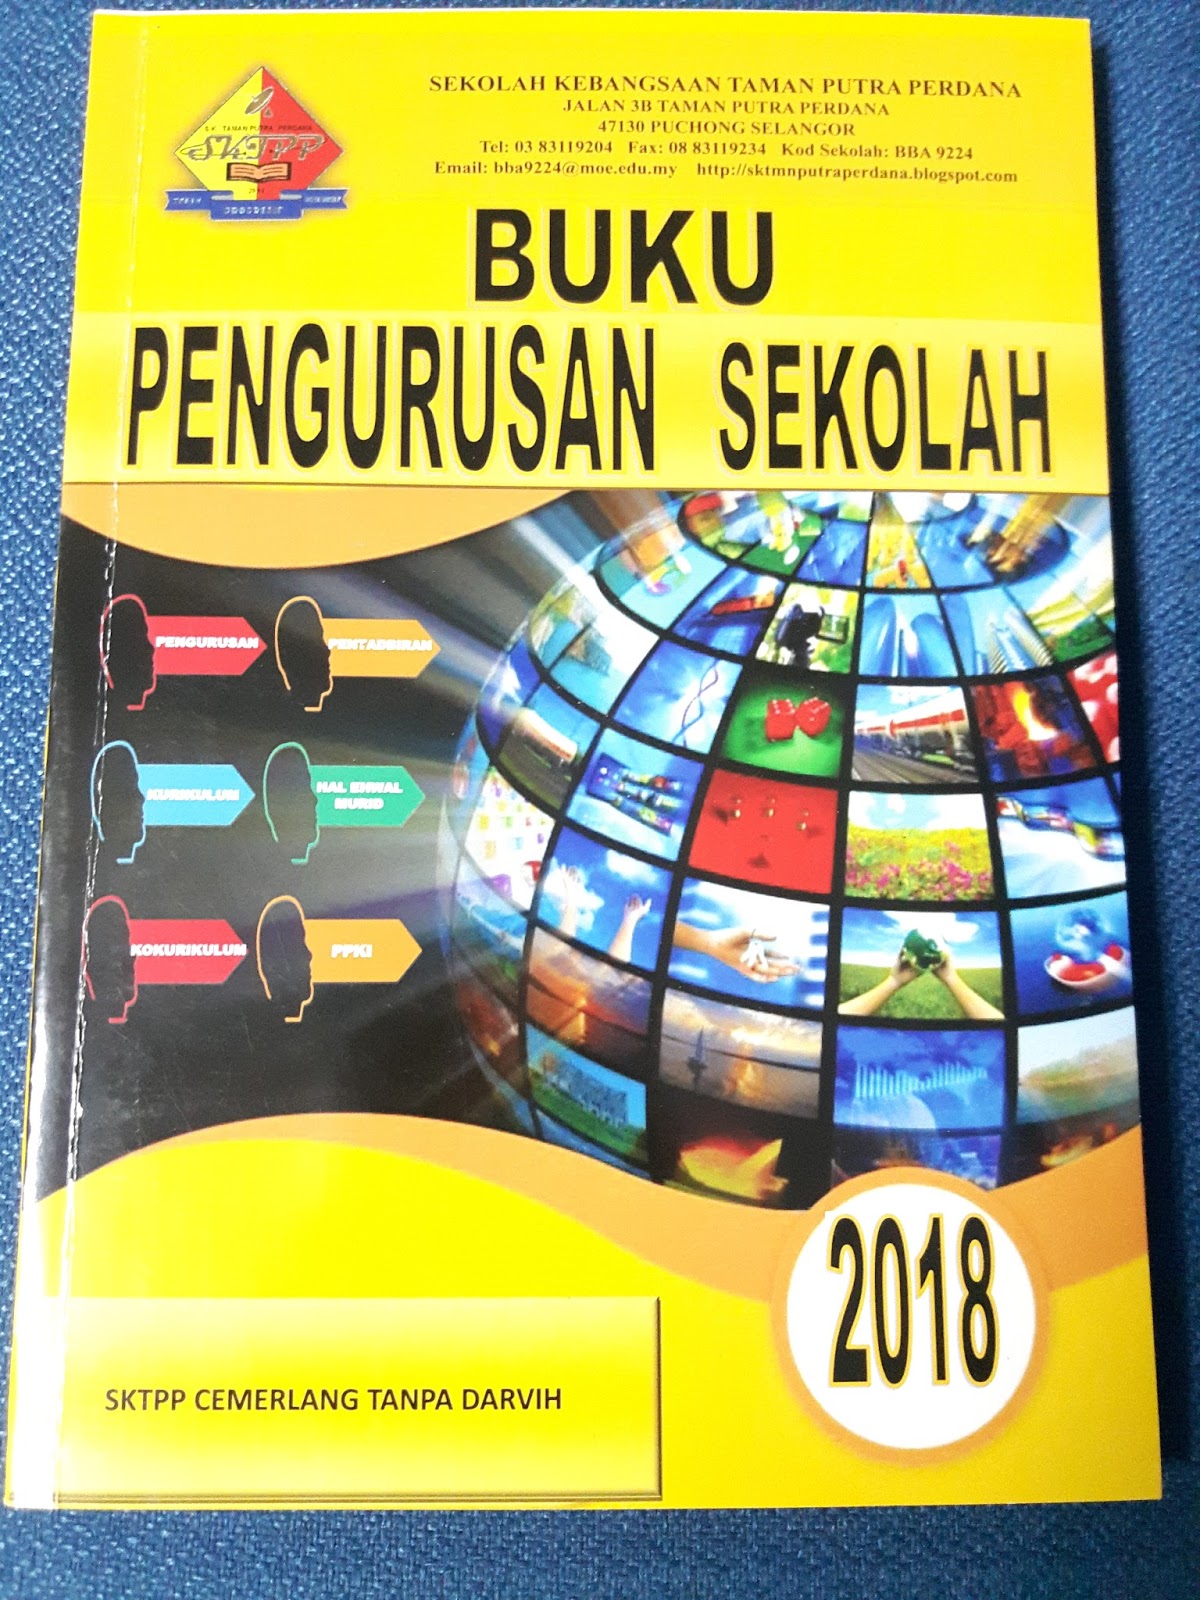 Buku Pengurusan Sekolah Rendah 2019 - Buku Pengurusan Sekolah 2019 Pdf